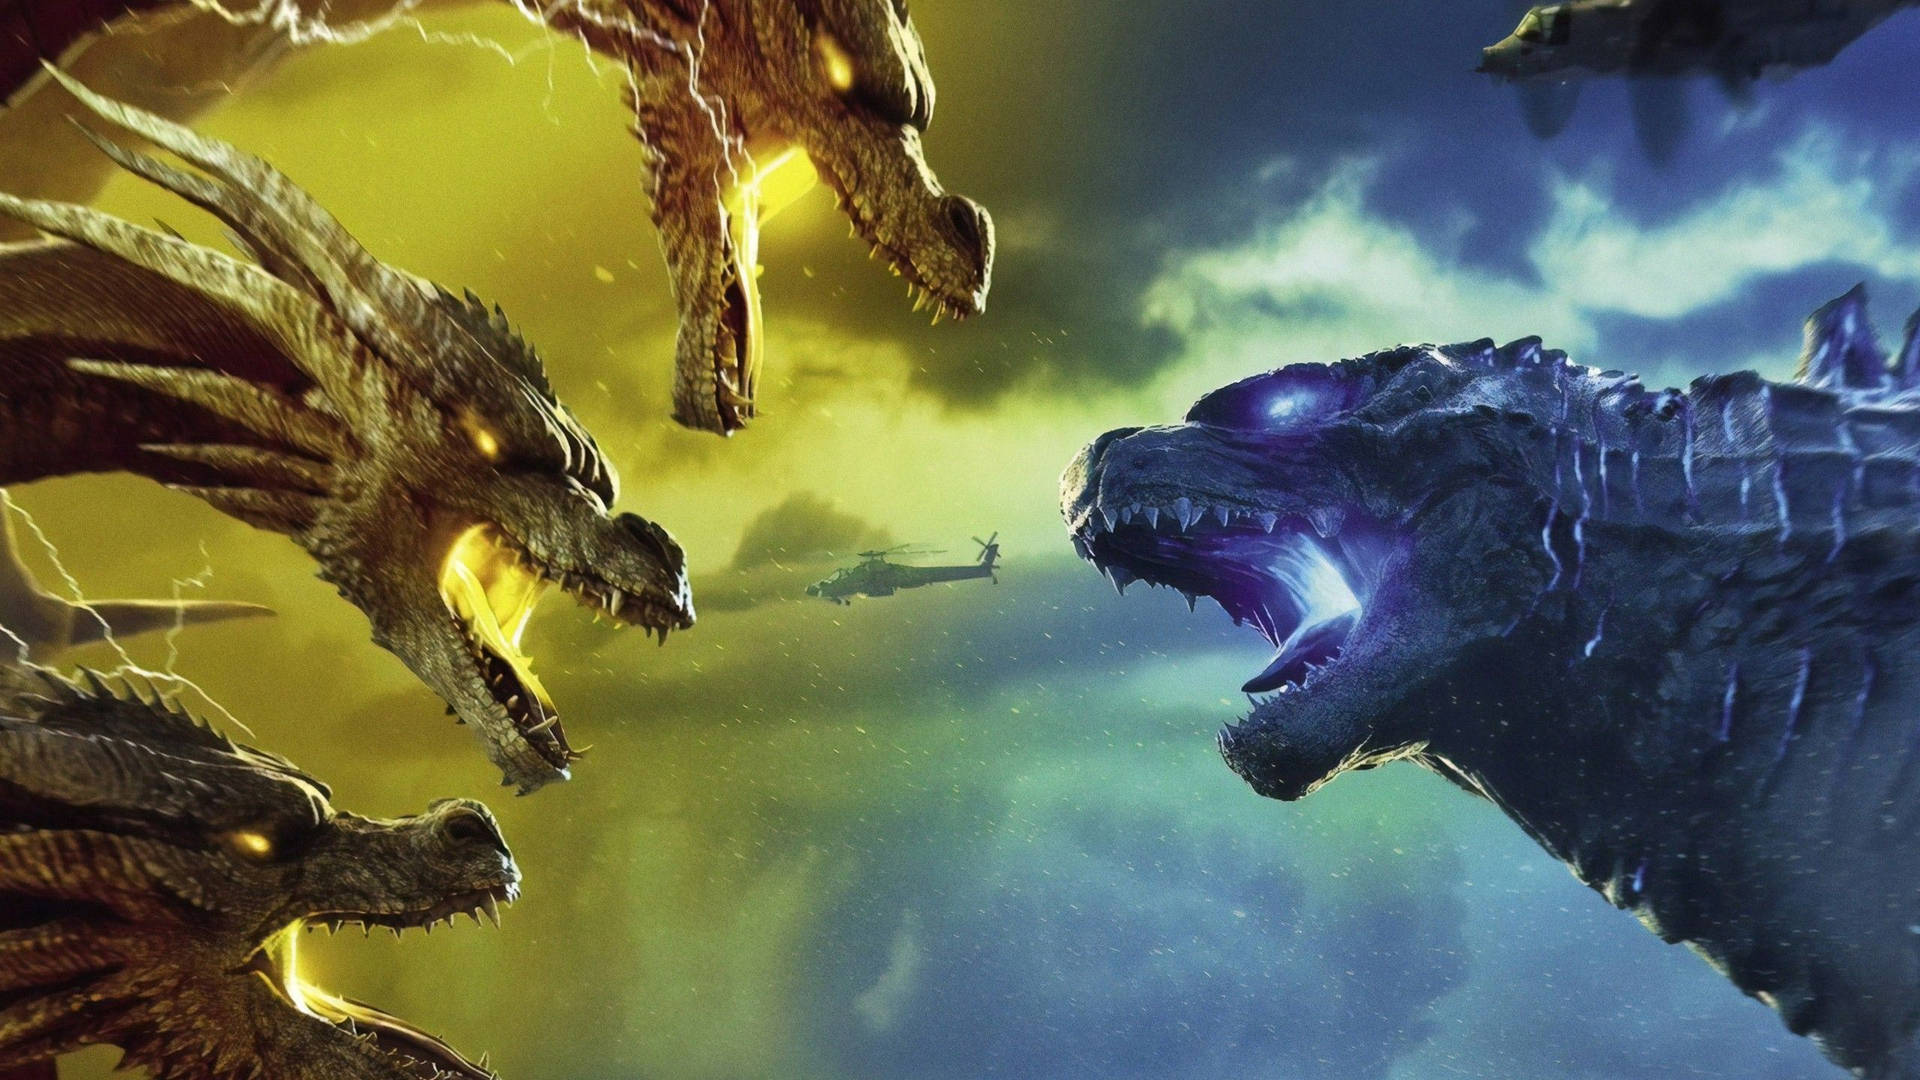 Godzilla 2560X1440 Wallpaper and Background Image